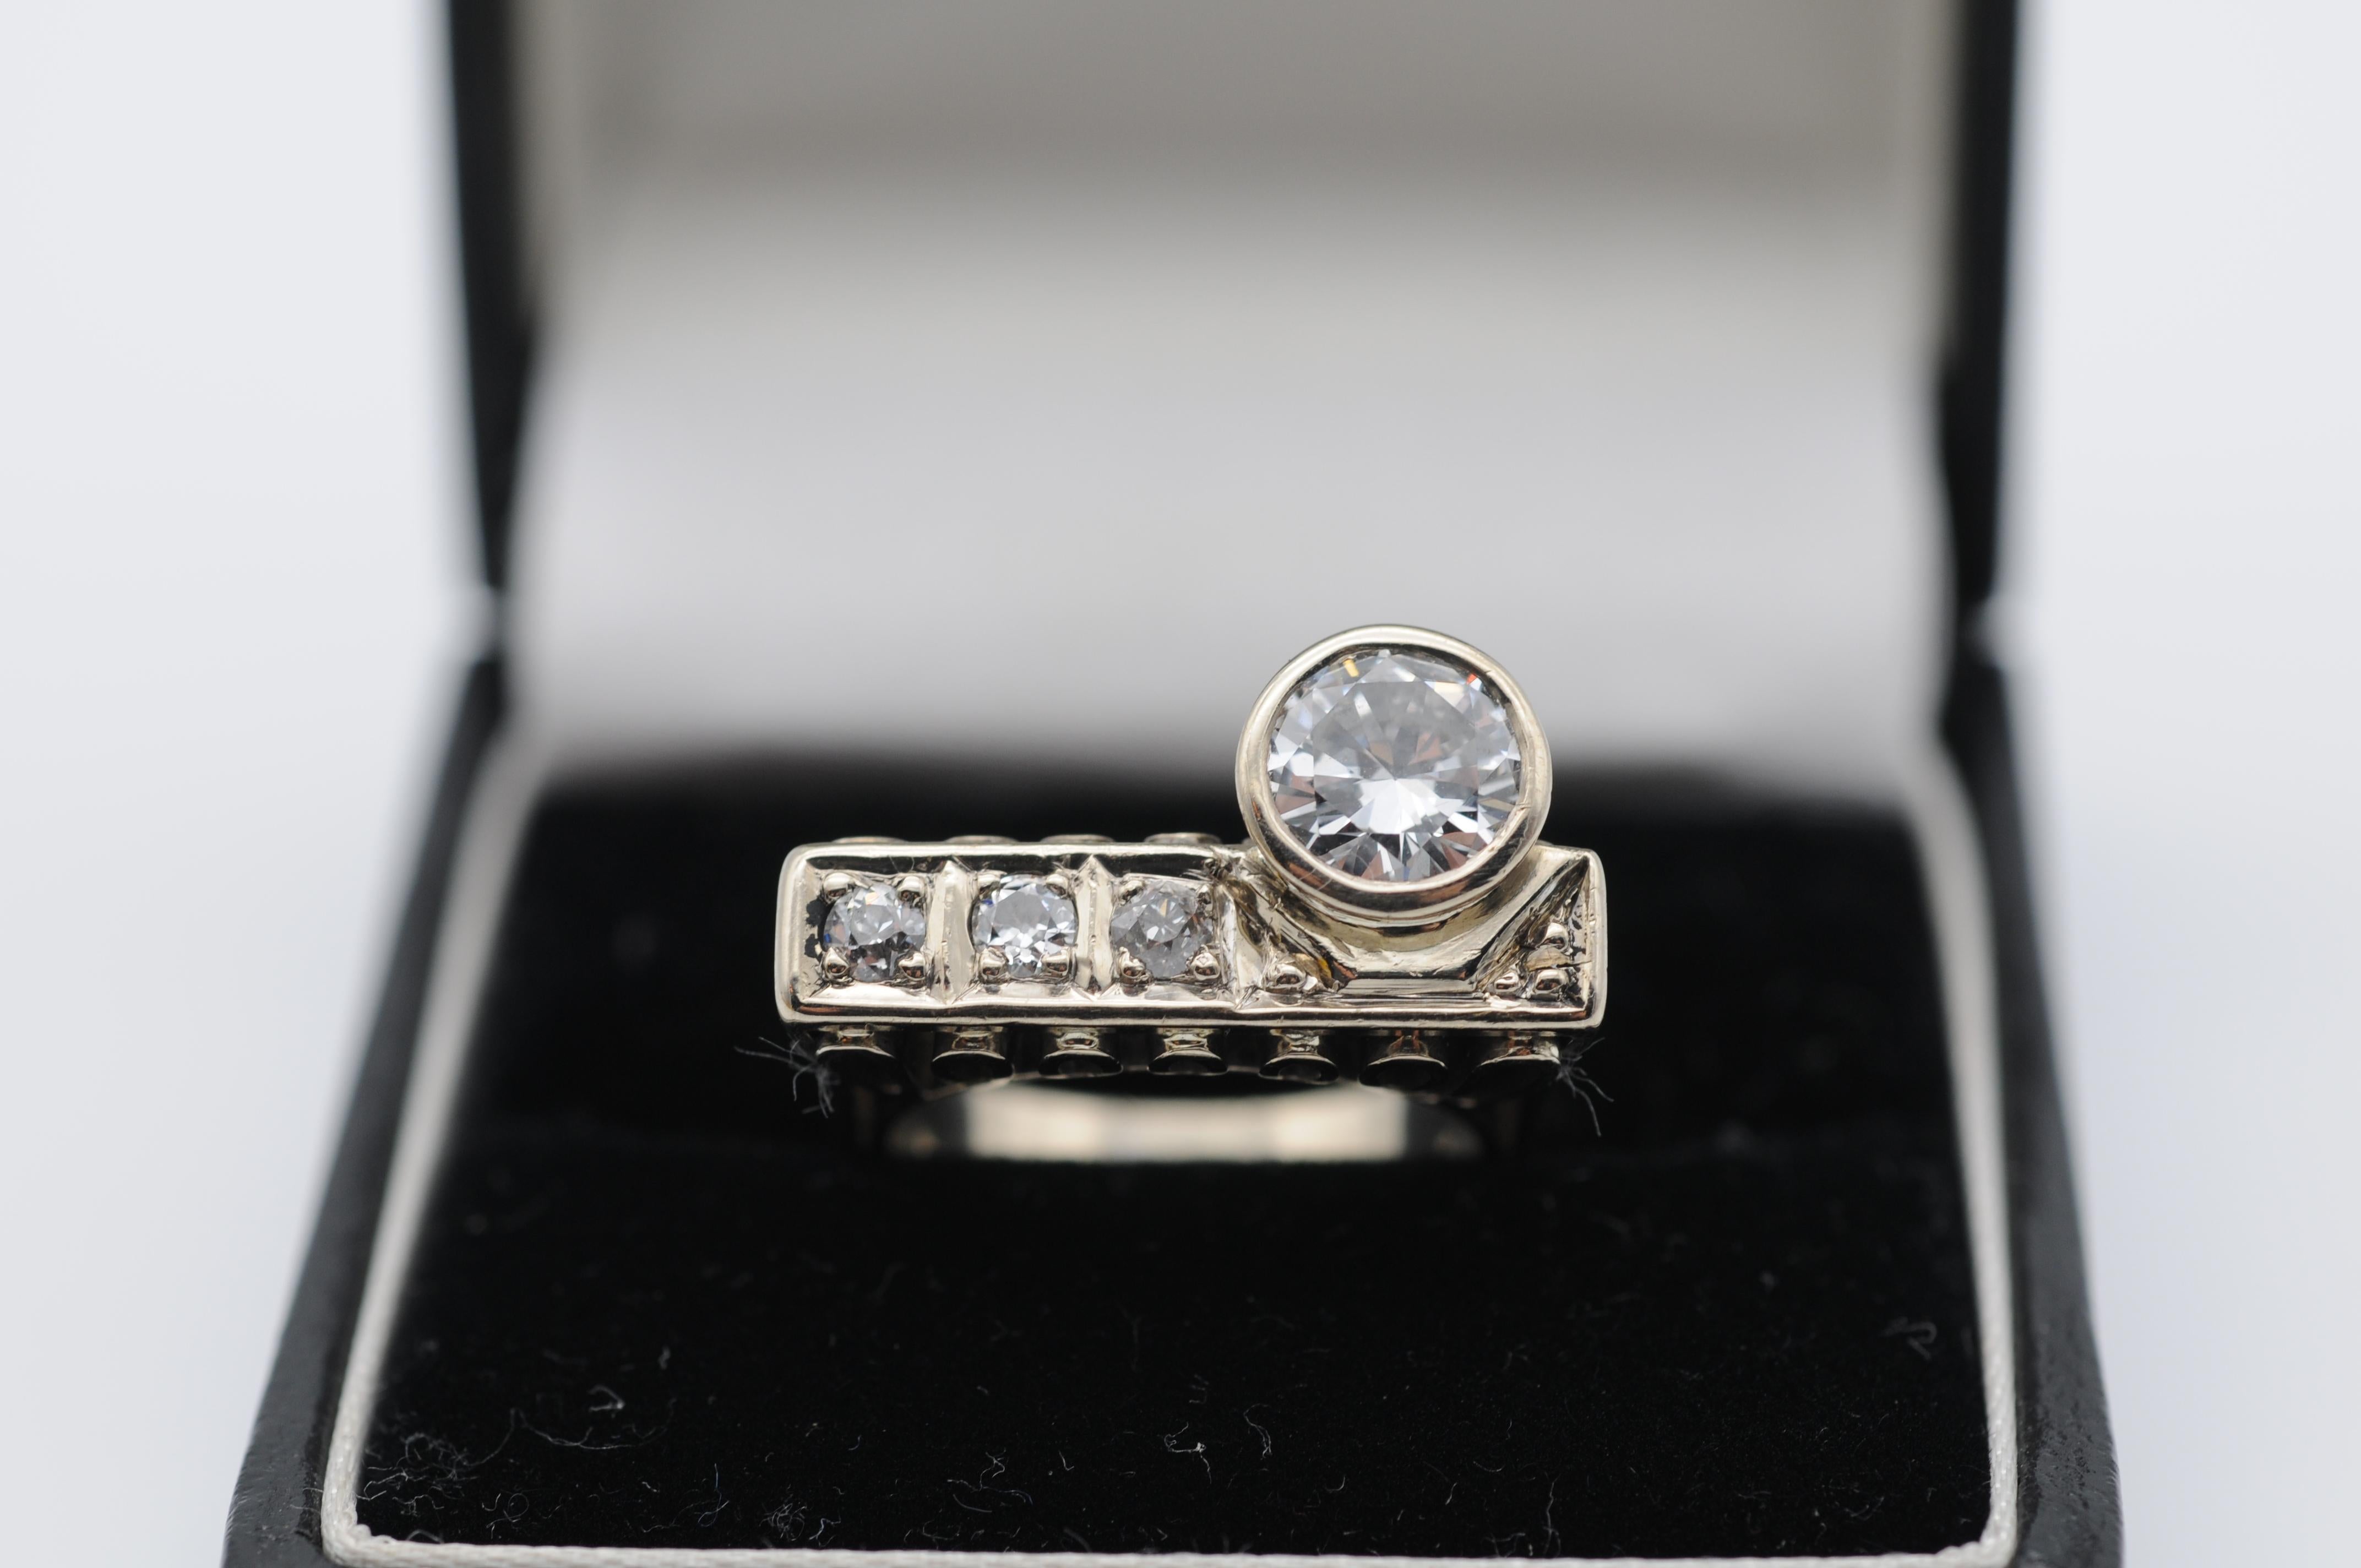 Gönnen Sie sich den Inbegriff von Raffinesse und Luxus mit diesem exquisiten Solitär-Brillantring mit 1,10 Karat aus 14 Karat Weißgold. Der Ring ist mit einem atemberaubenden Diamanten von 1,10 Karat besetzt, der fachmännisch bearbeitet wurde, um